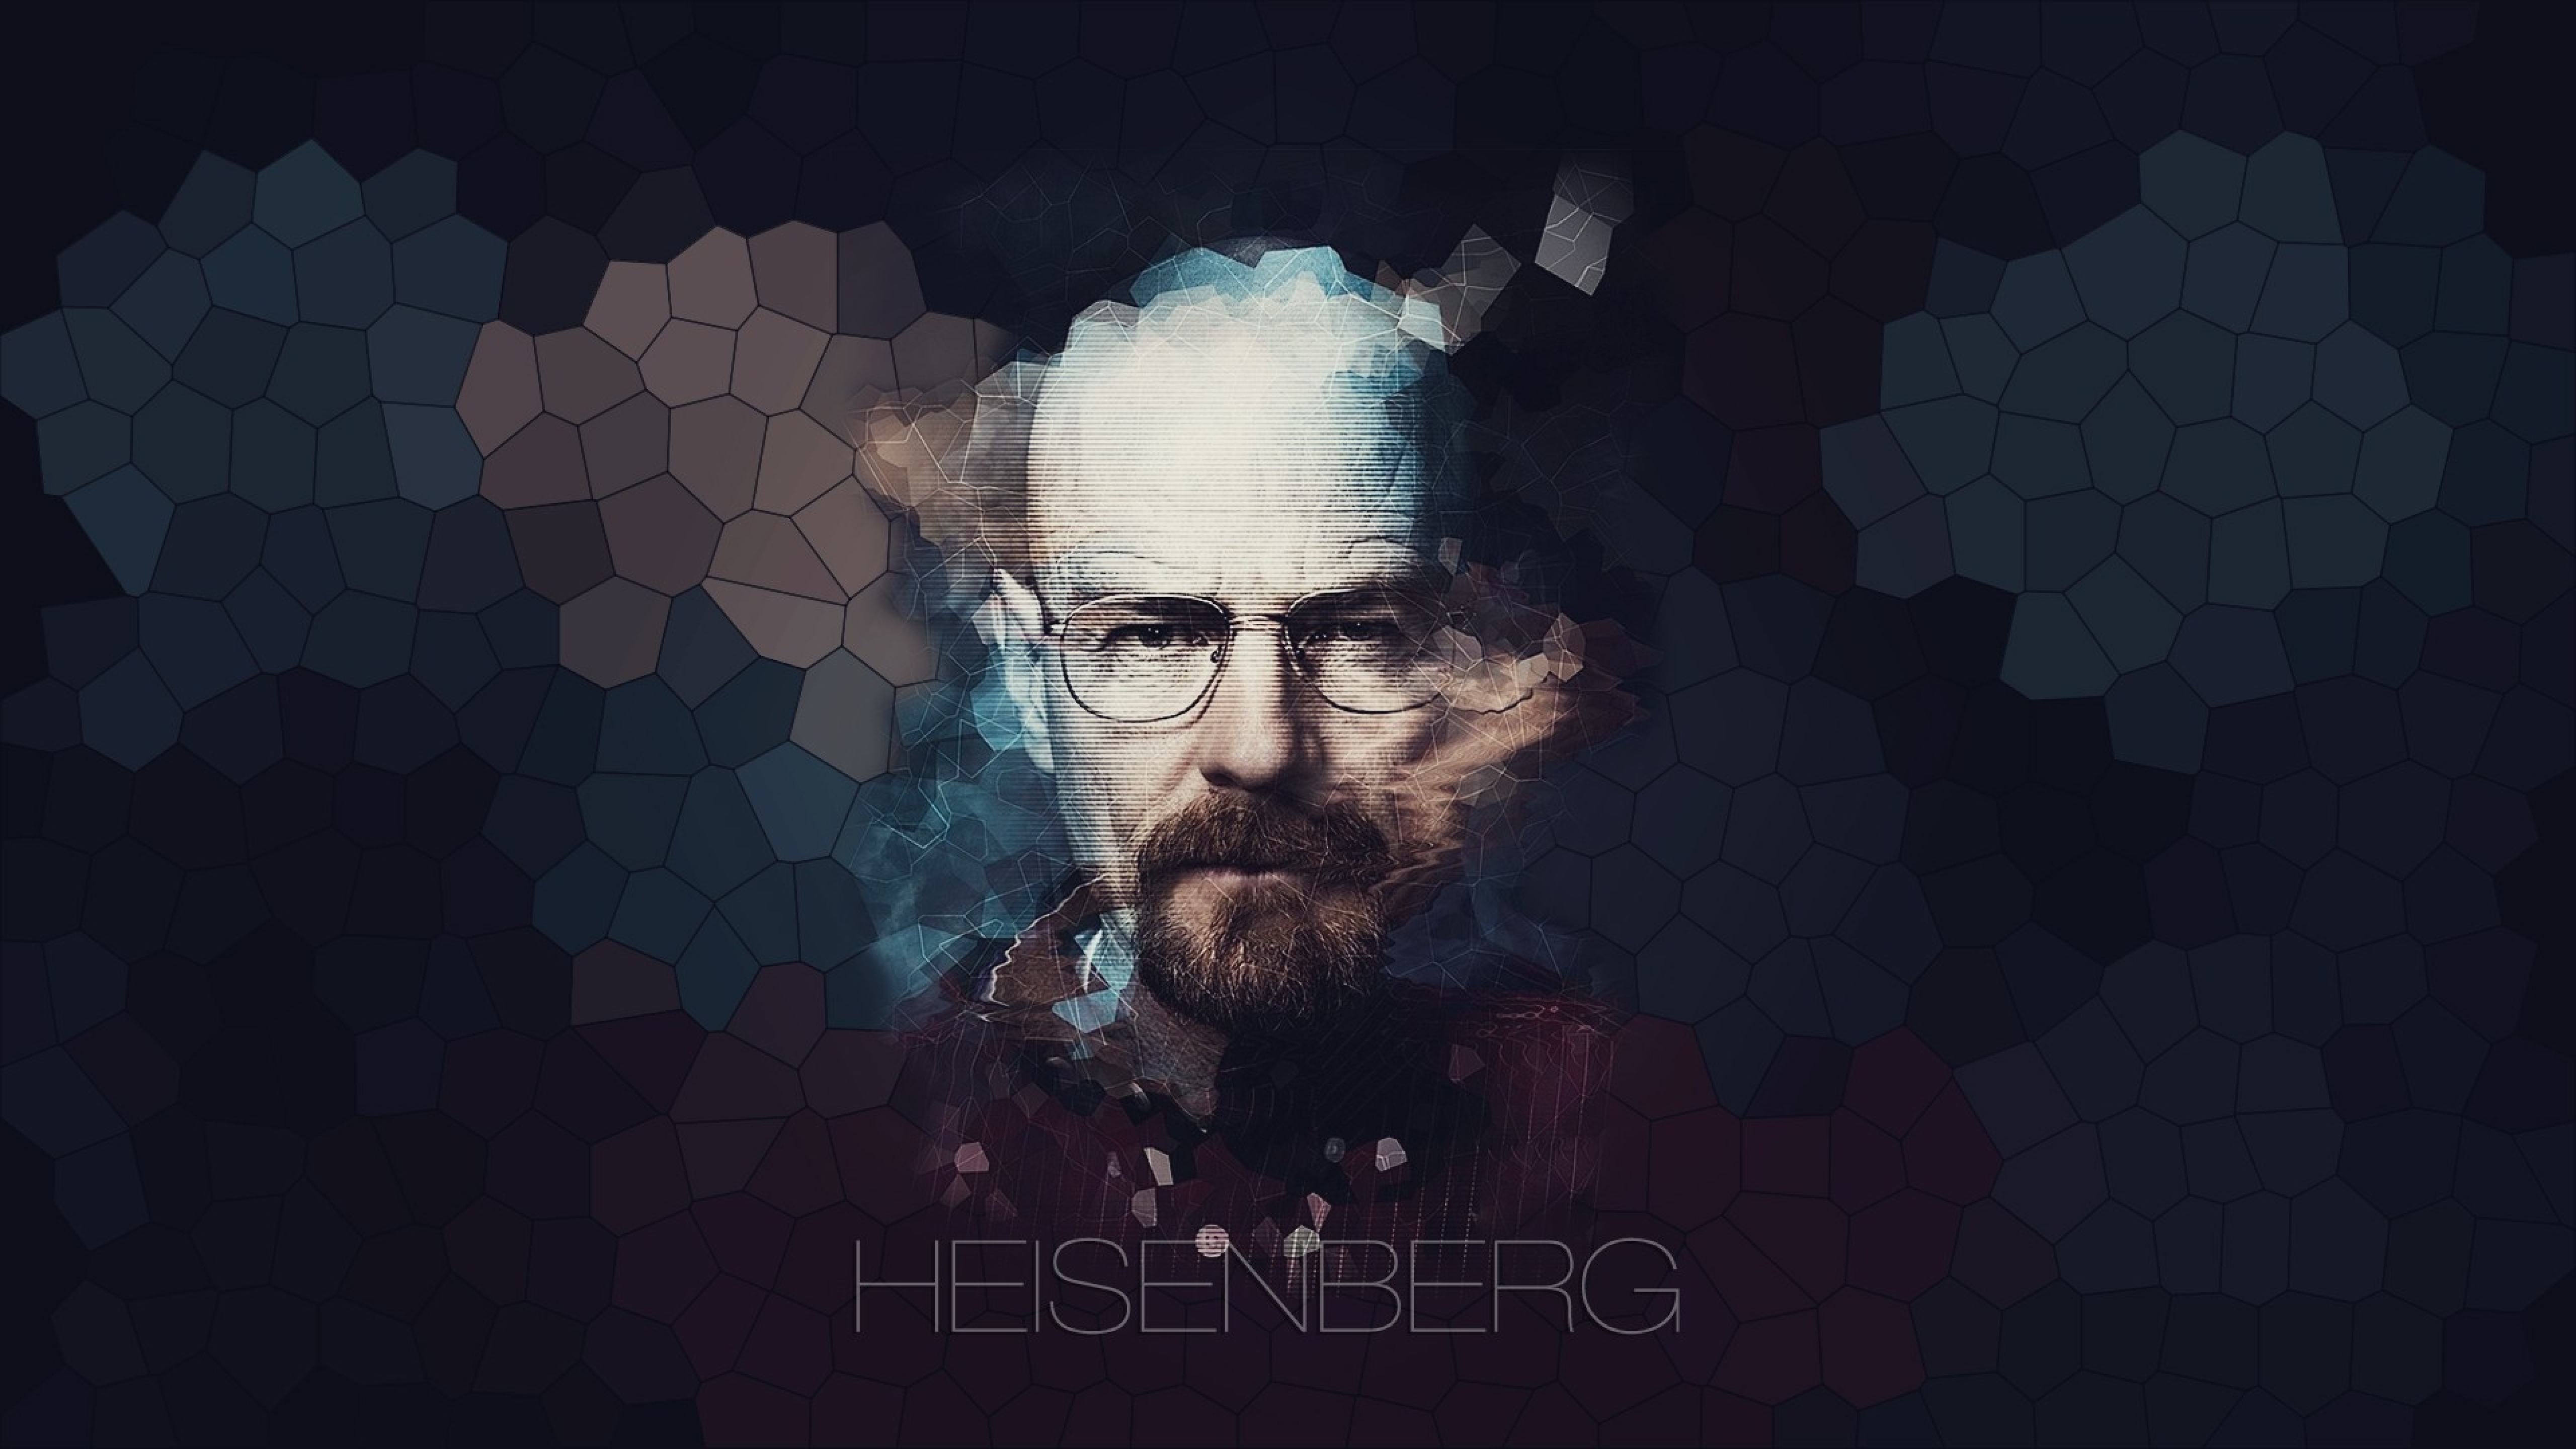 Breaking Bad, Walter White, Heisenberg, Full HD Wallpaper